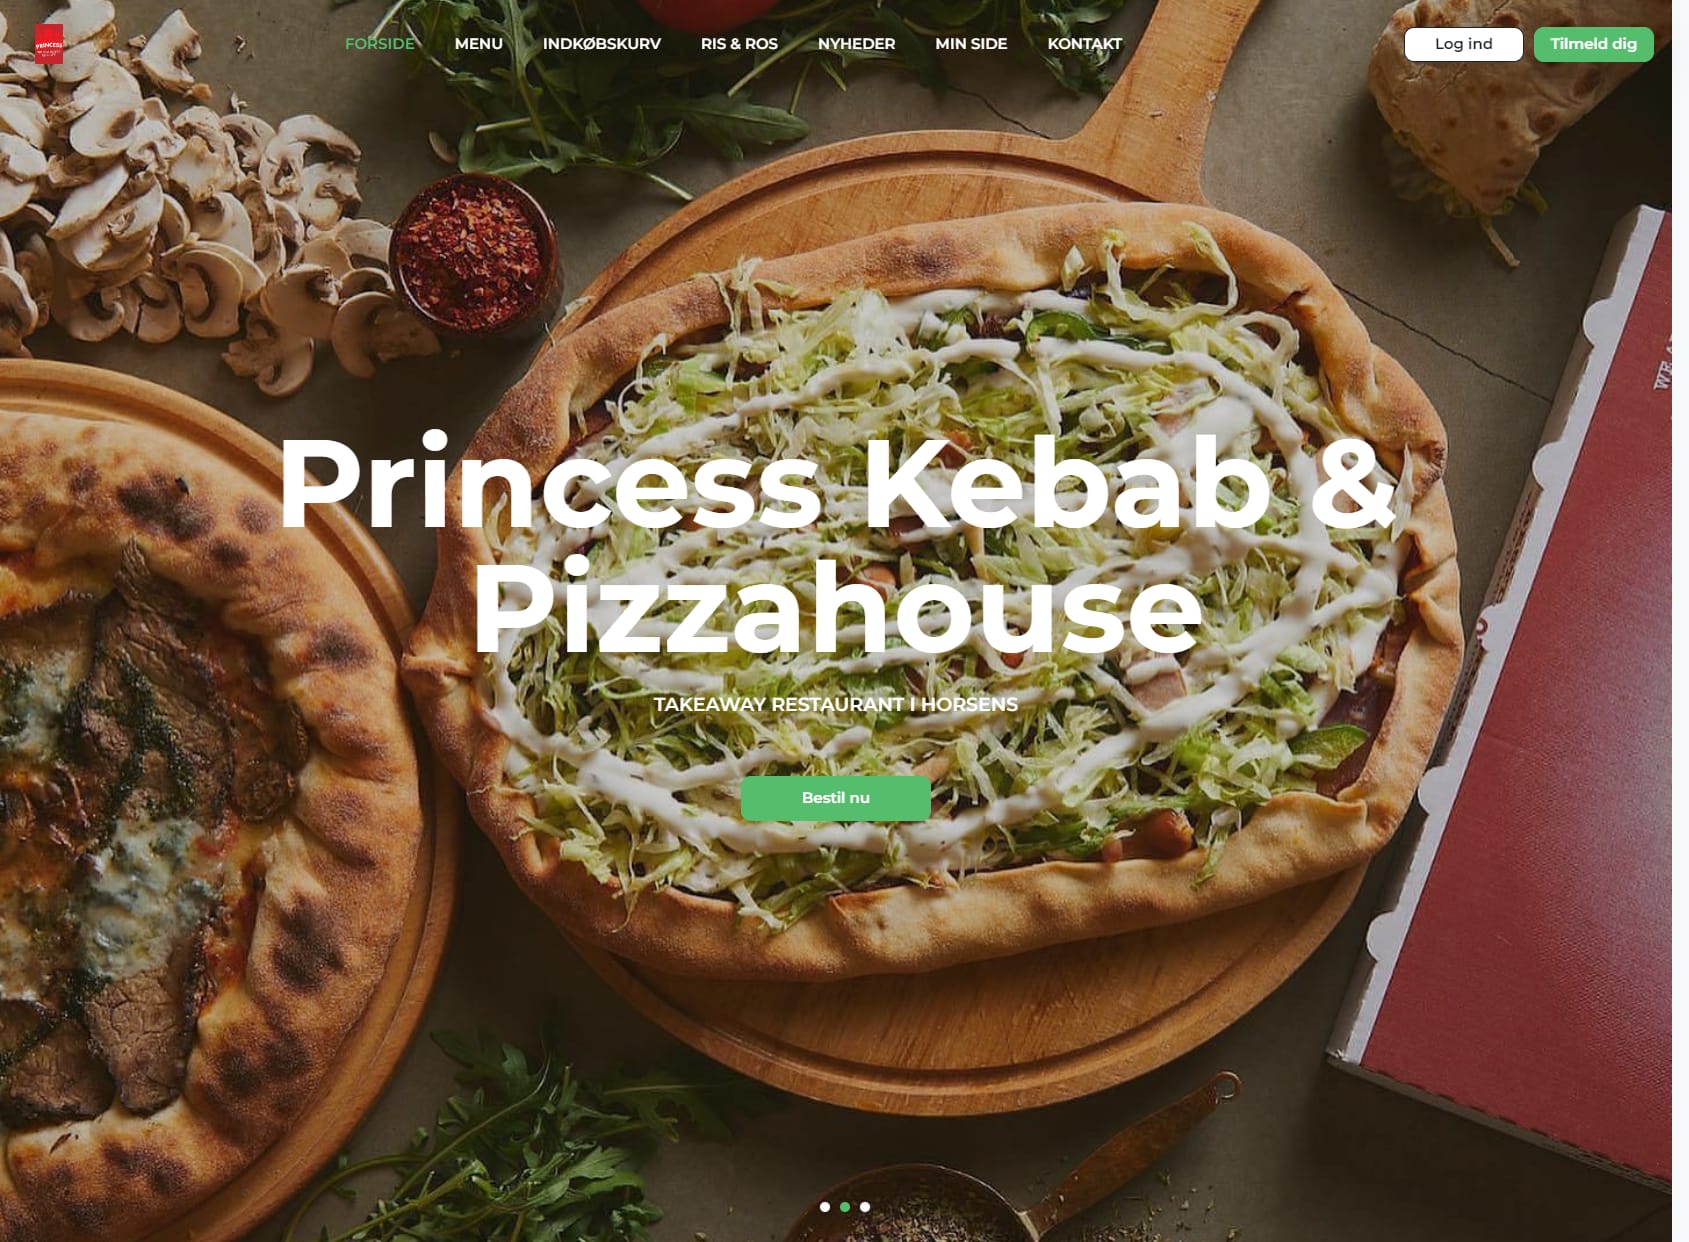 Princess Kebab og Pizzahouse